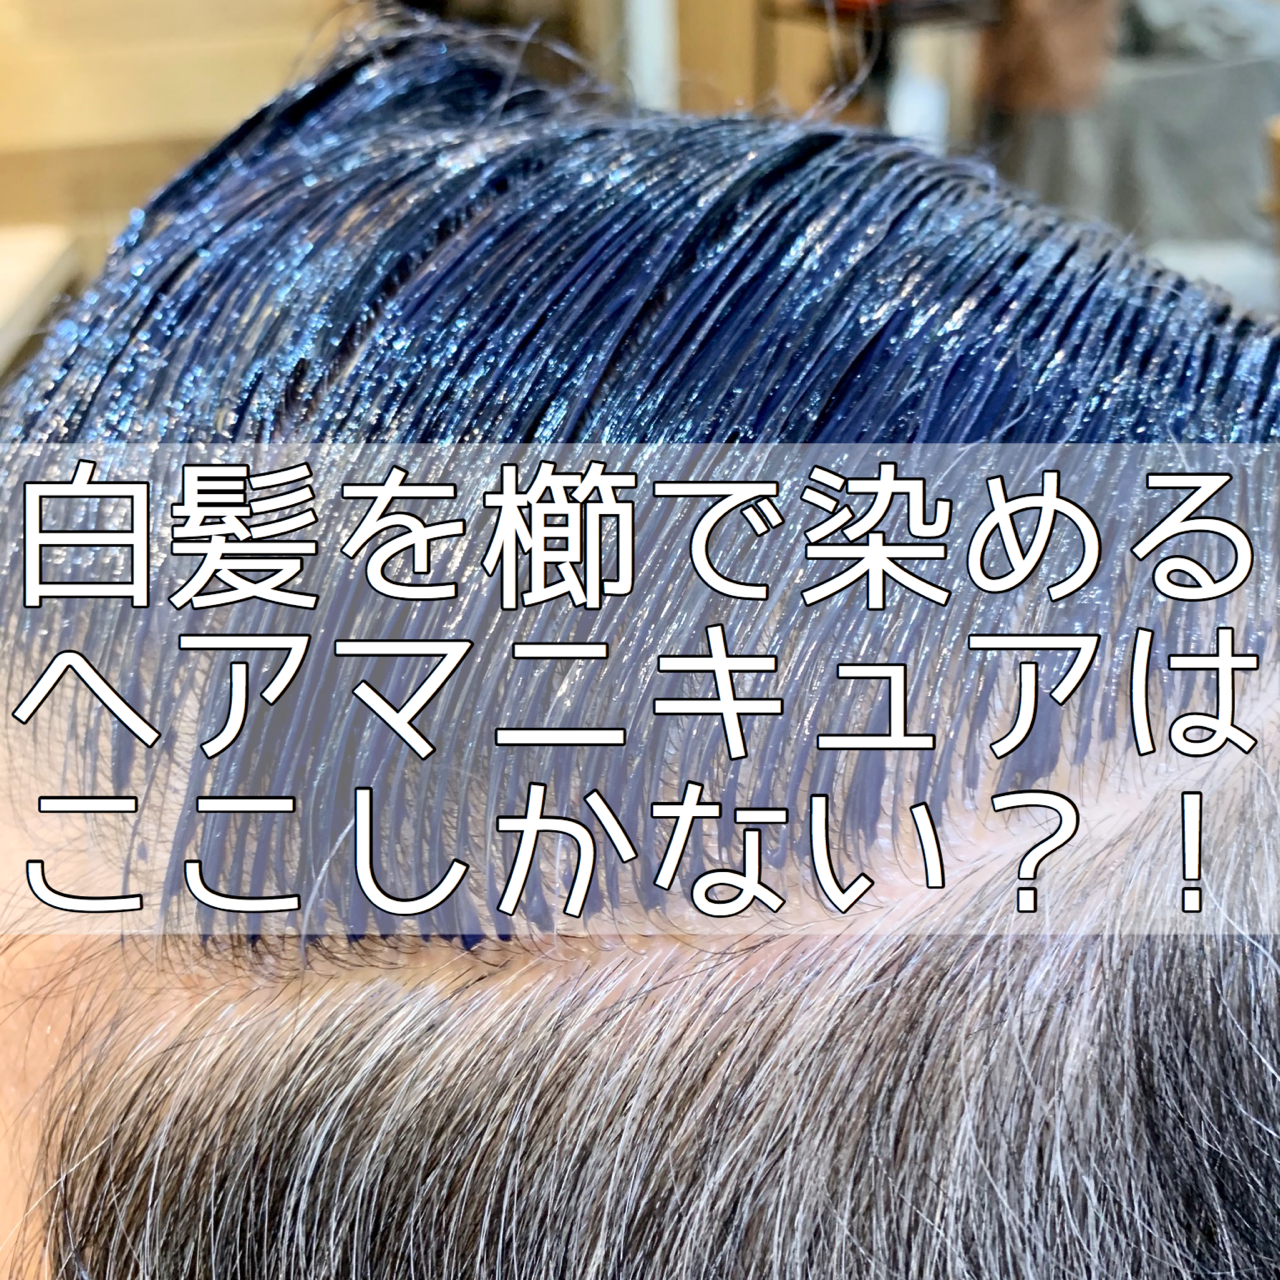 恵比寿の美容室でメンズ 白髪染めならロマンスグレーもオススメです Esukyu 恵比寿パーソナル美容師ブランド